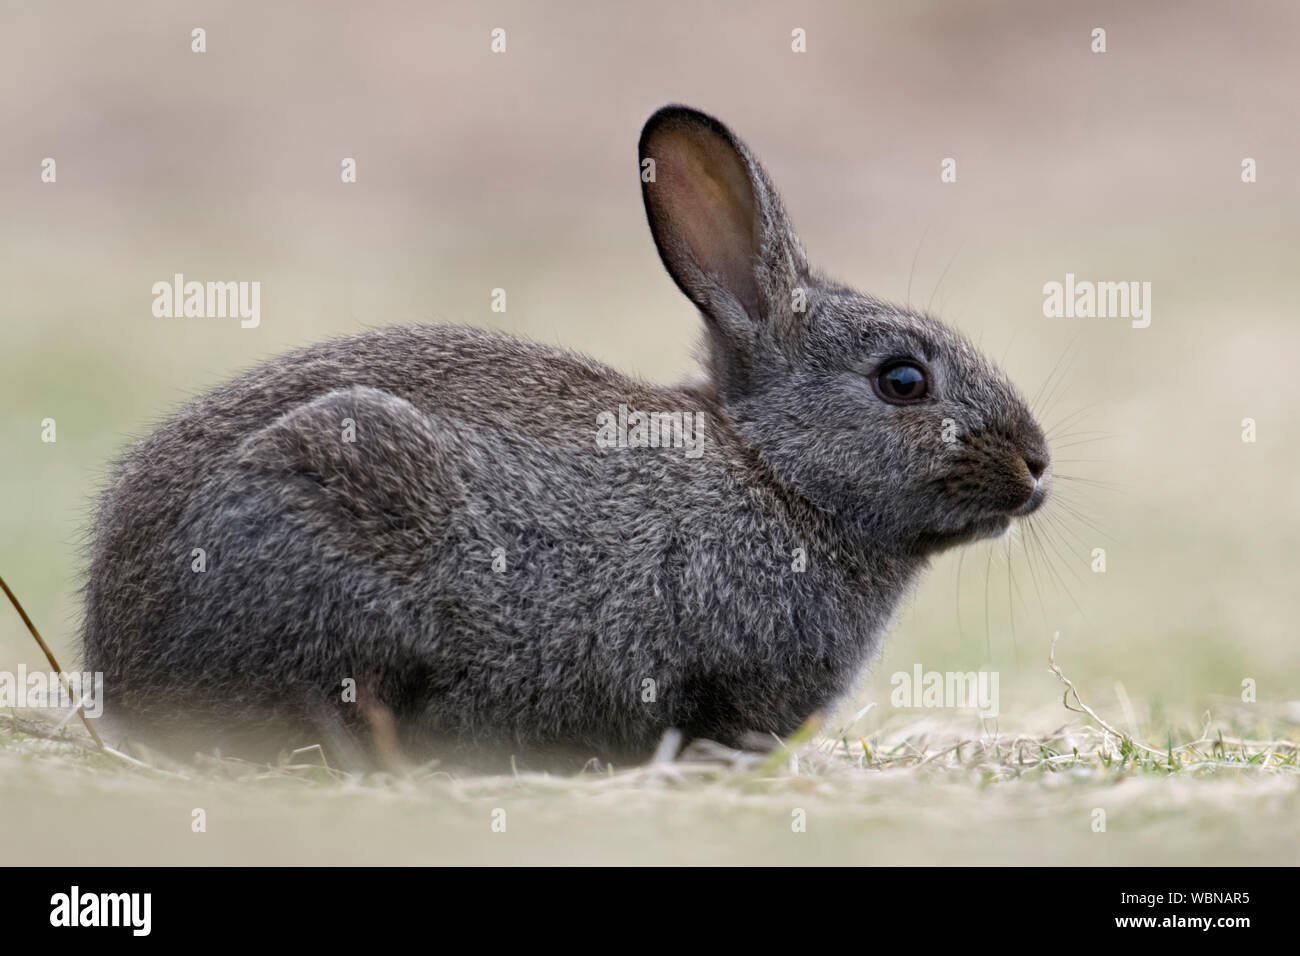 Schwarz Europäischen Kaninchen (Oryctolagus cuniculus), schwarze Form, Melanism, melanistic Färbung, Nahaufnahme, süß aussieht, Wildlife, Europa. Stockfoto